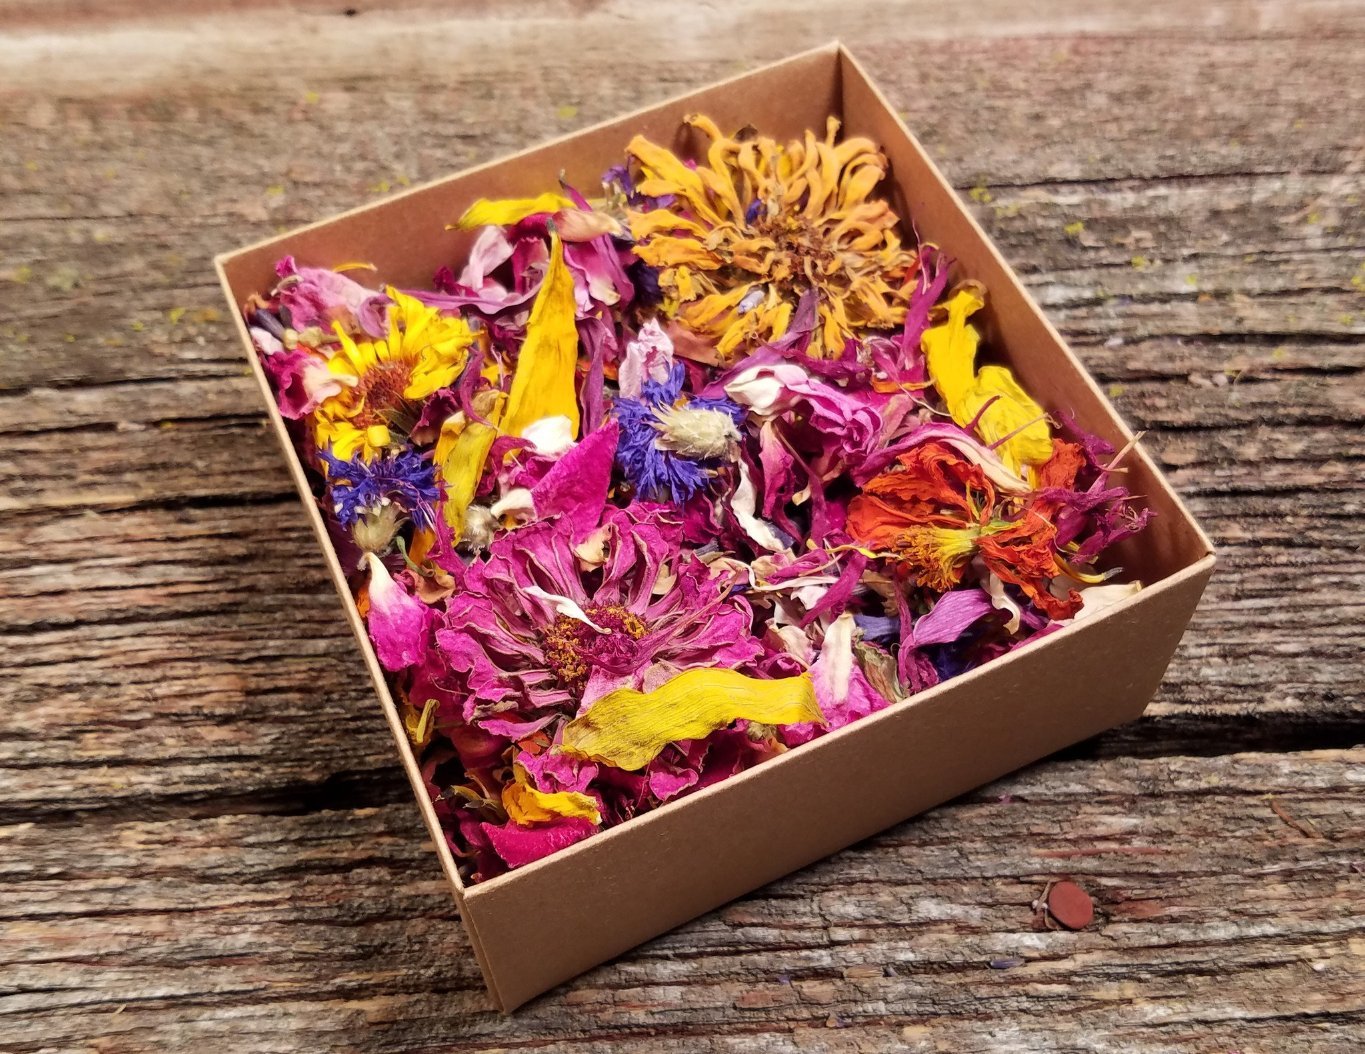 Bulk Dried Flowers, Eco-Friendly Wedding Flower Confetti